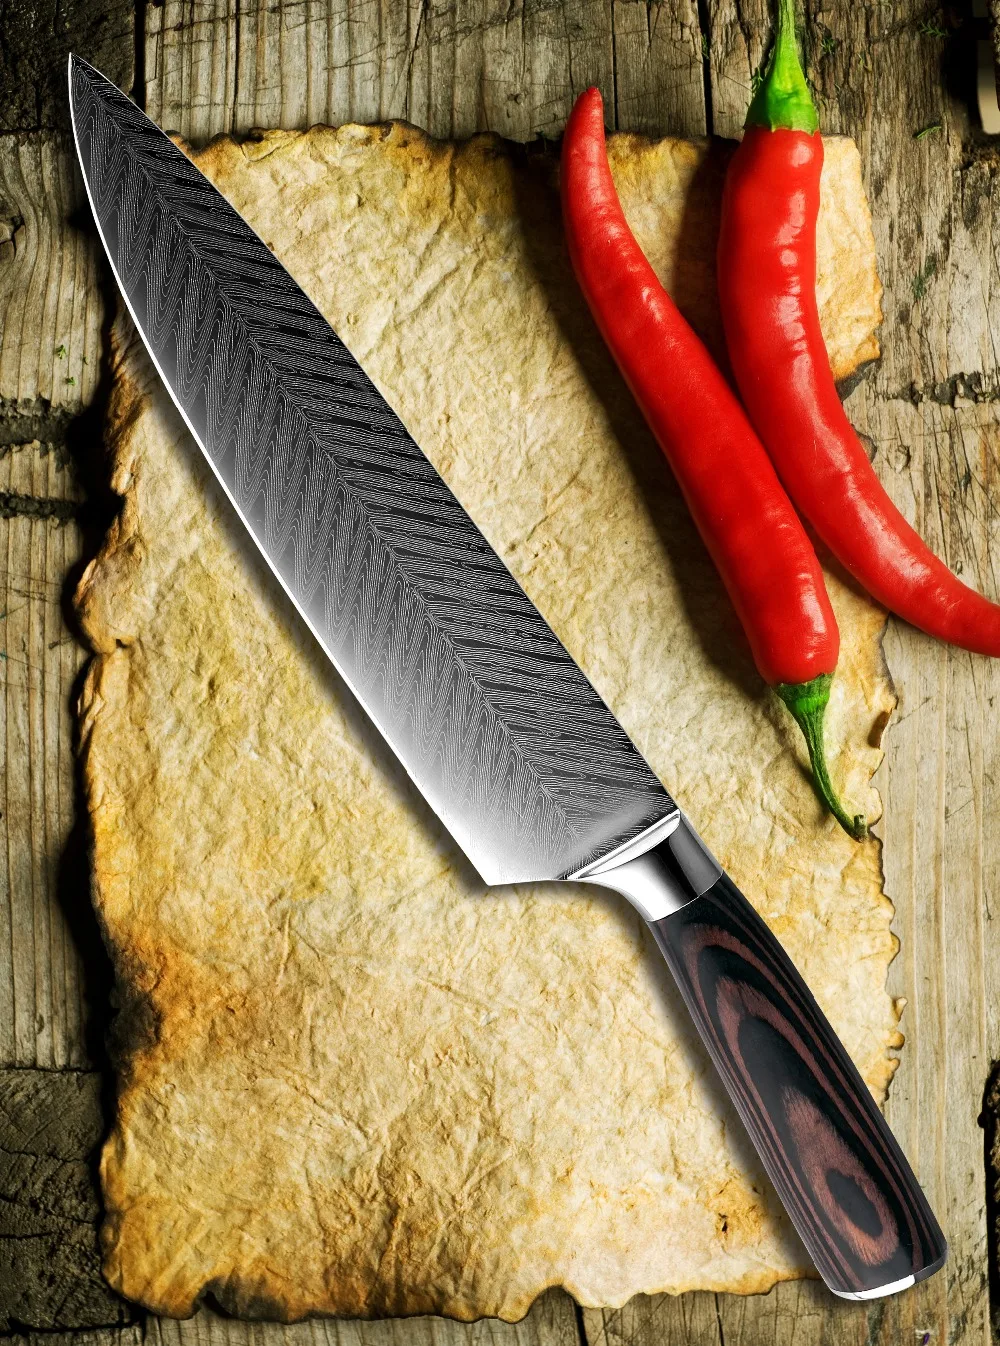 XITUO 8 дюймов Японские Кухонные Ножи Дамасская поверхность шеф-повара нож деревянная ручка Япония сталь Santoku Кливер нож инструмент